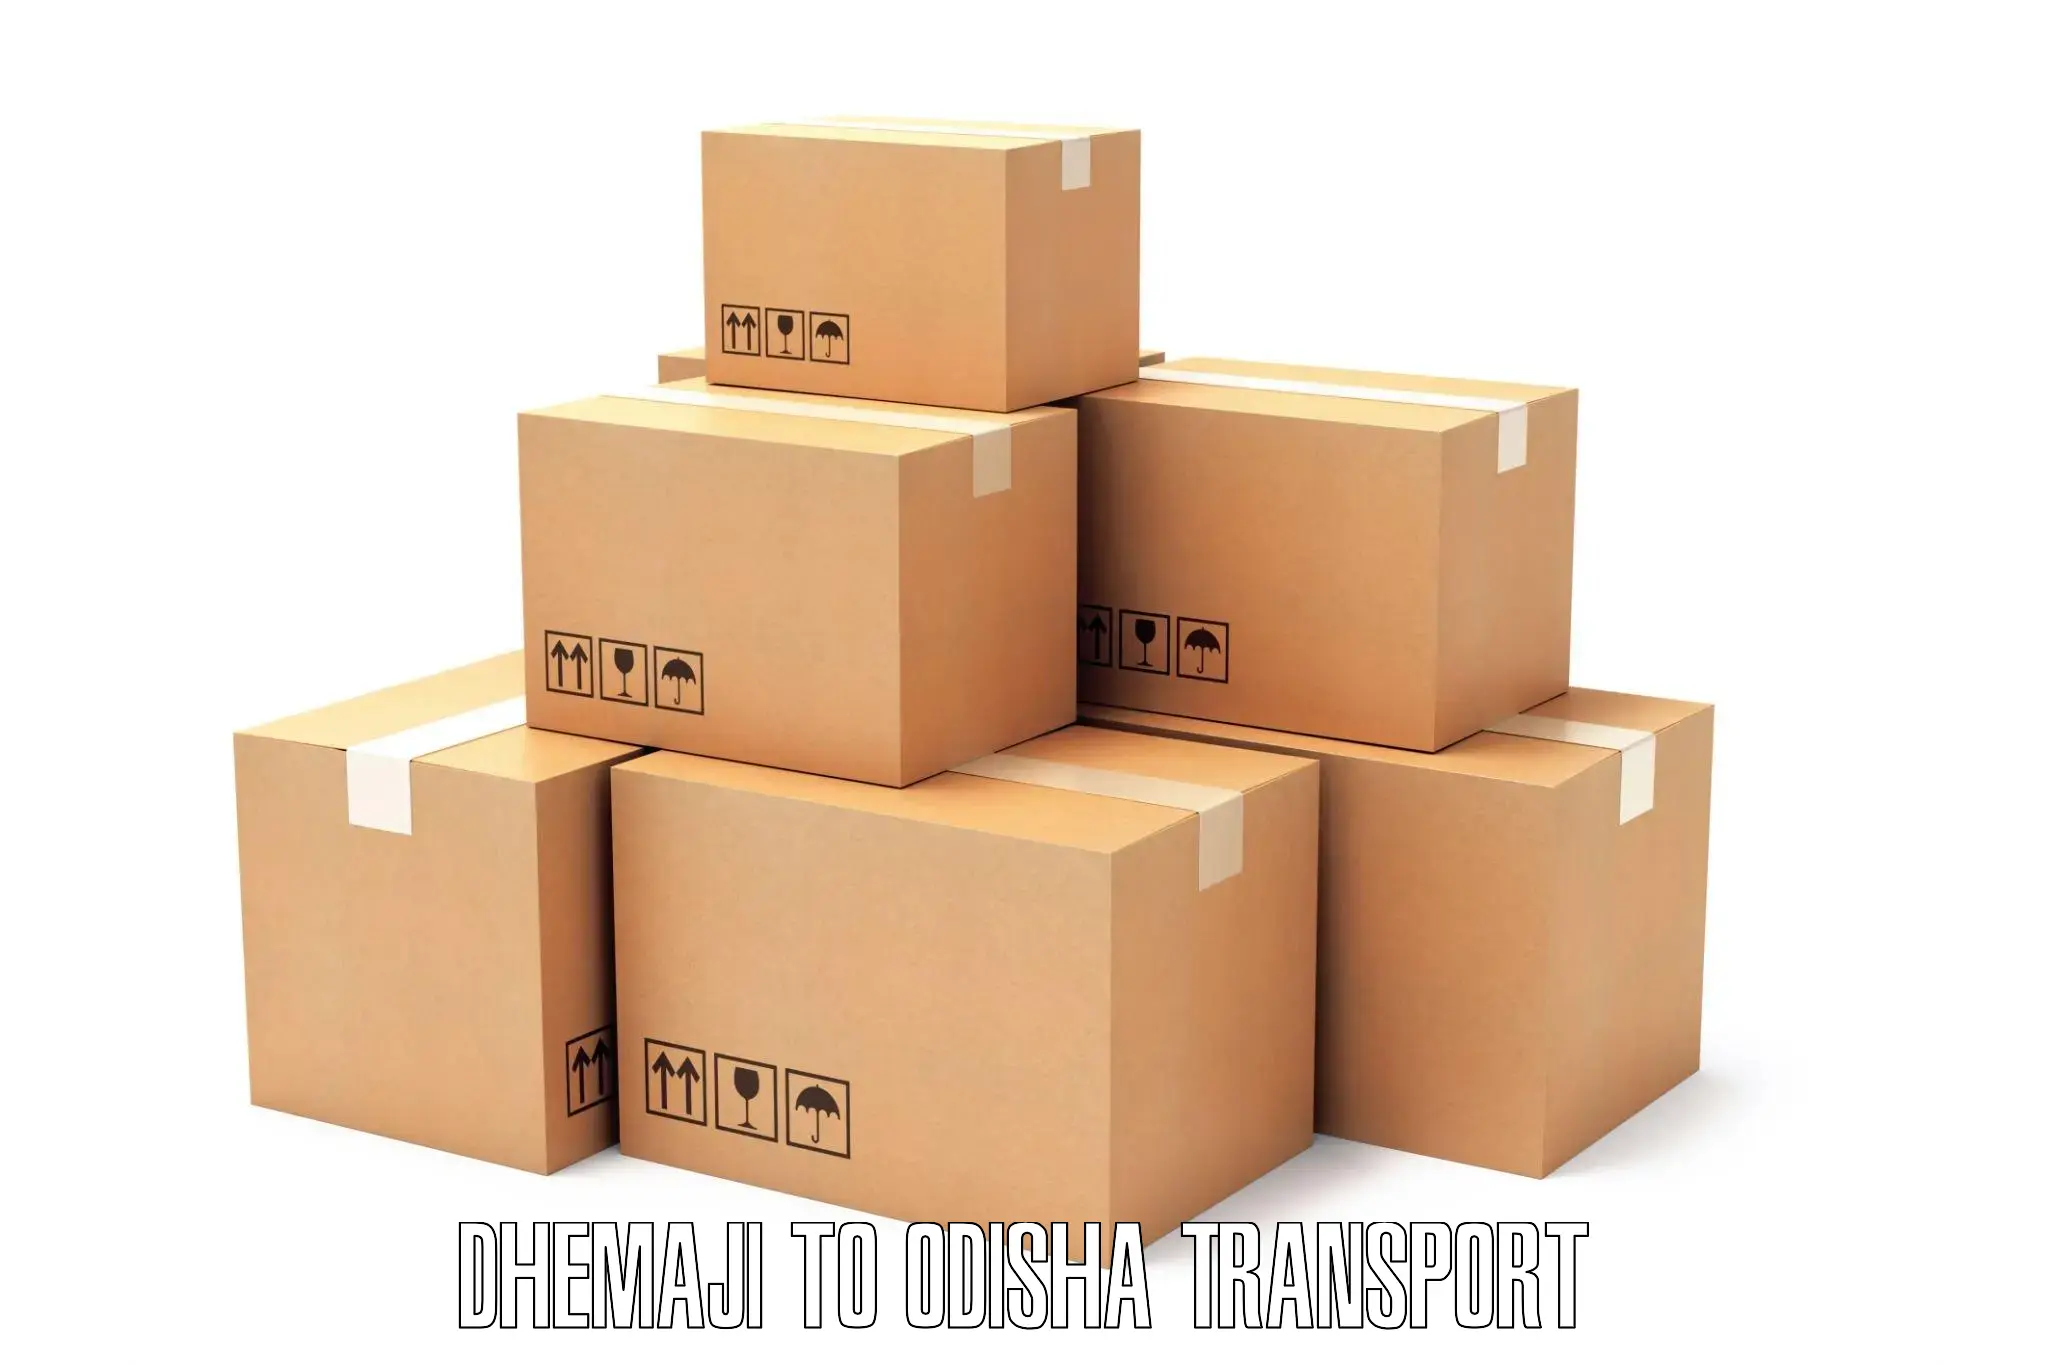 Interstate goods transport Dhemaji to Raruan